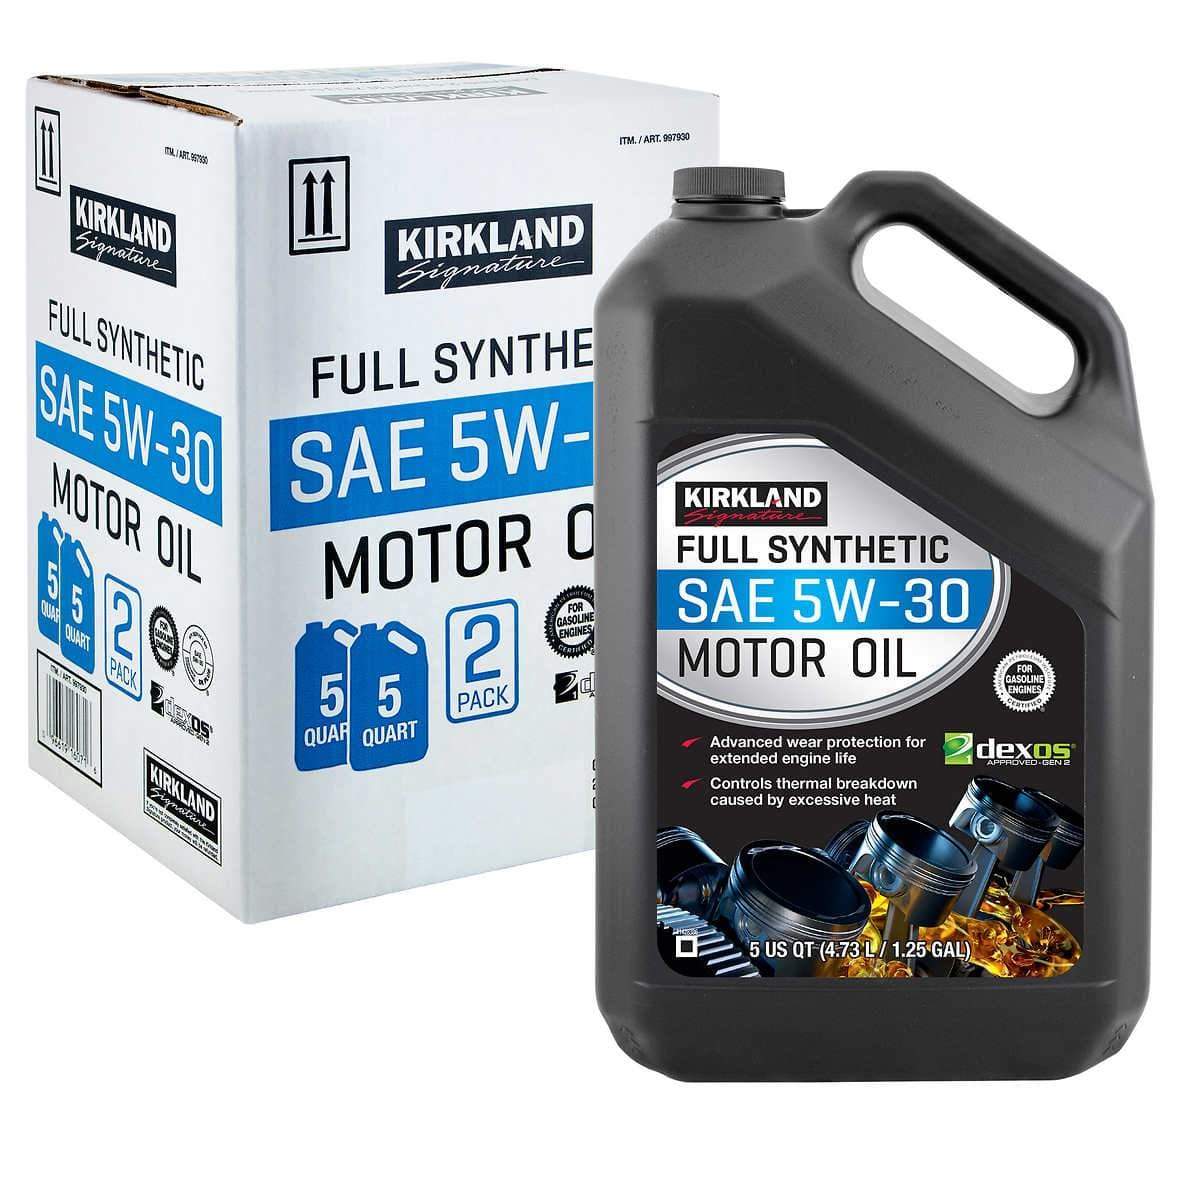 Kirkland Signature 5W-30 Full Synthetic Motor Oil 5-quart, 2-Bottles